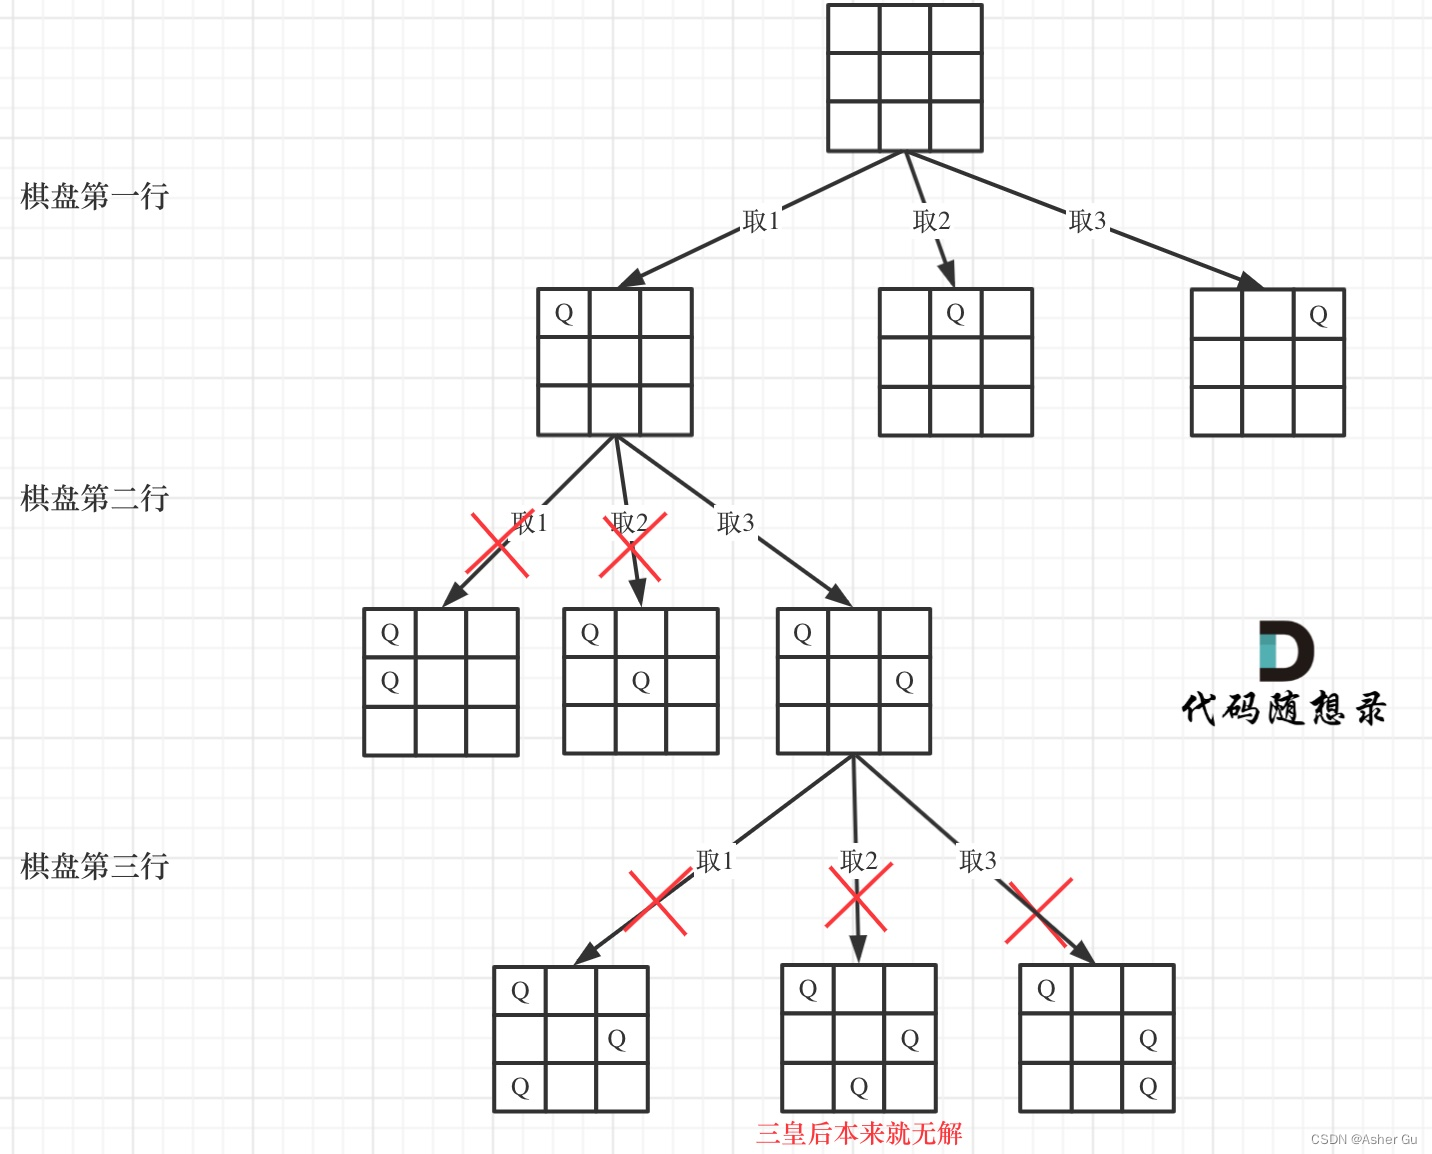 N皇后问题的递归过程 以三维矩阵为例